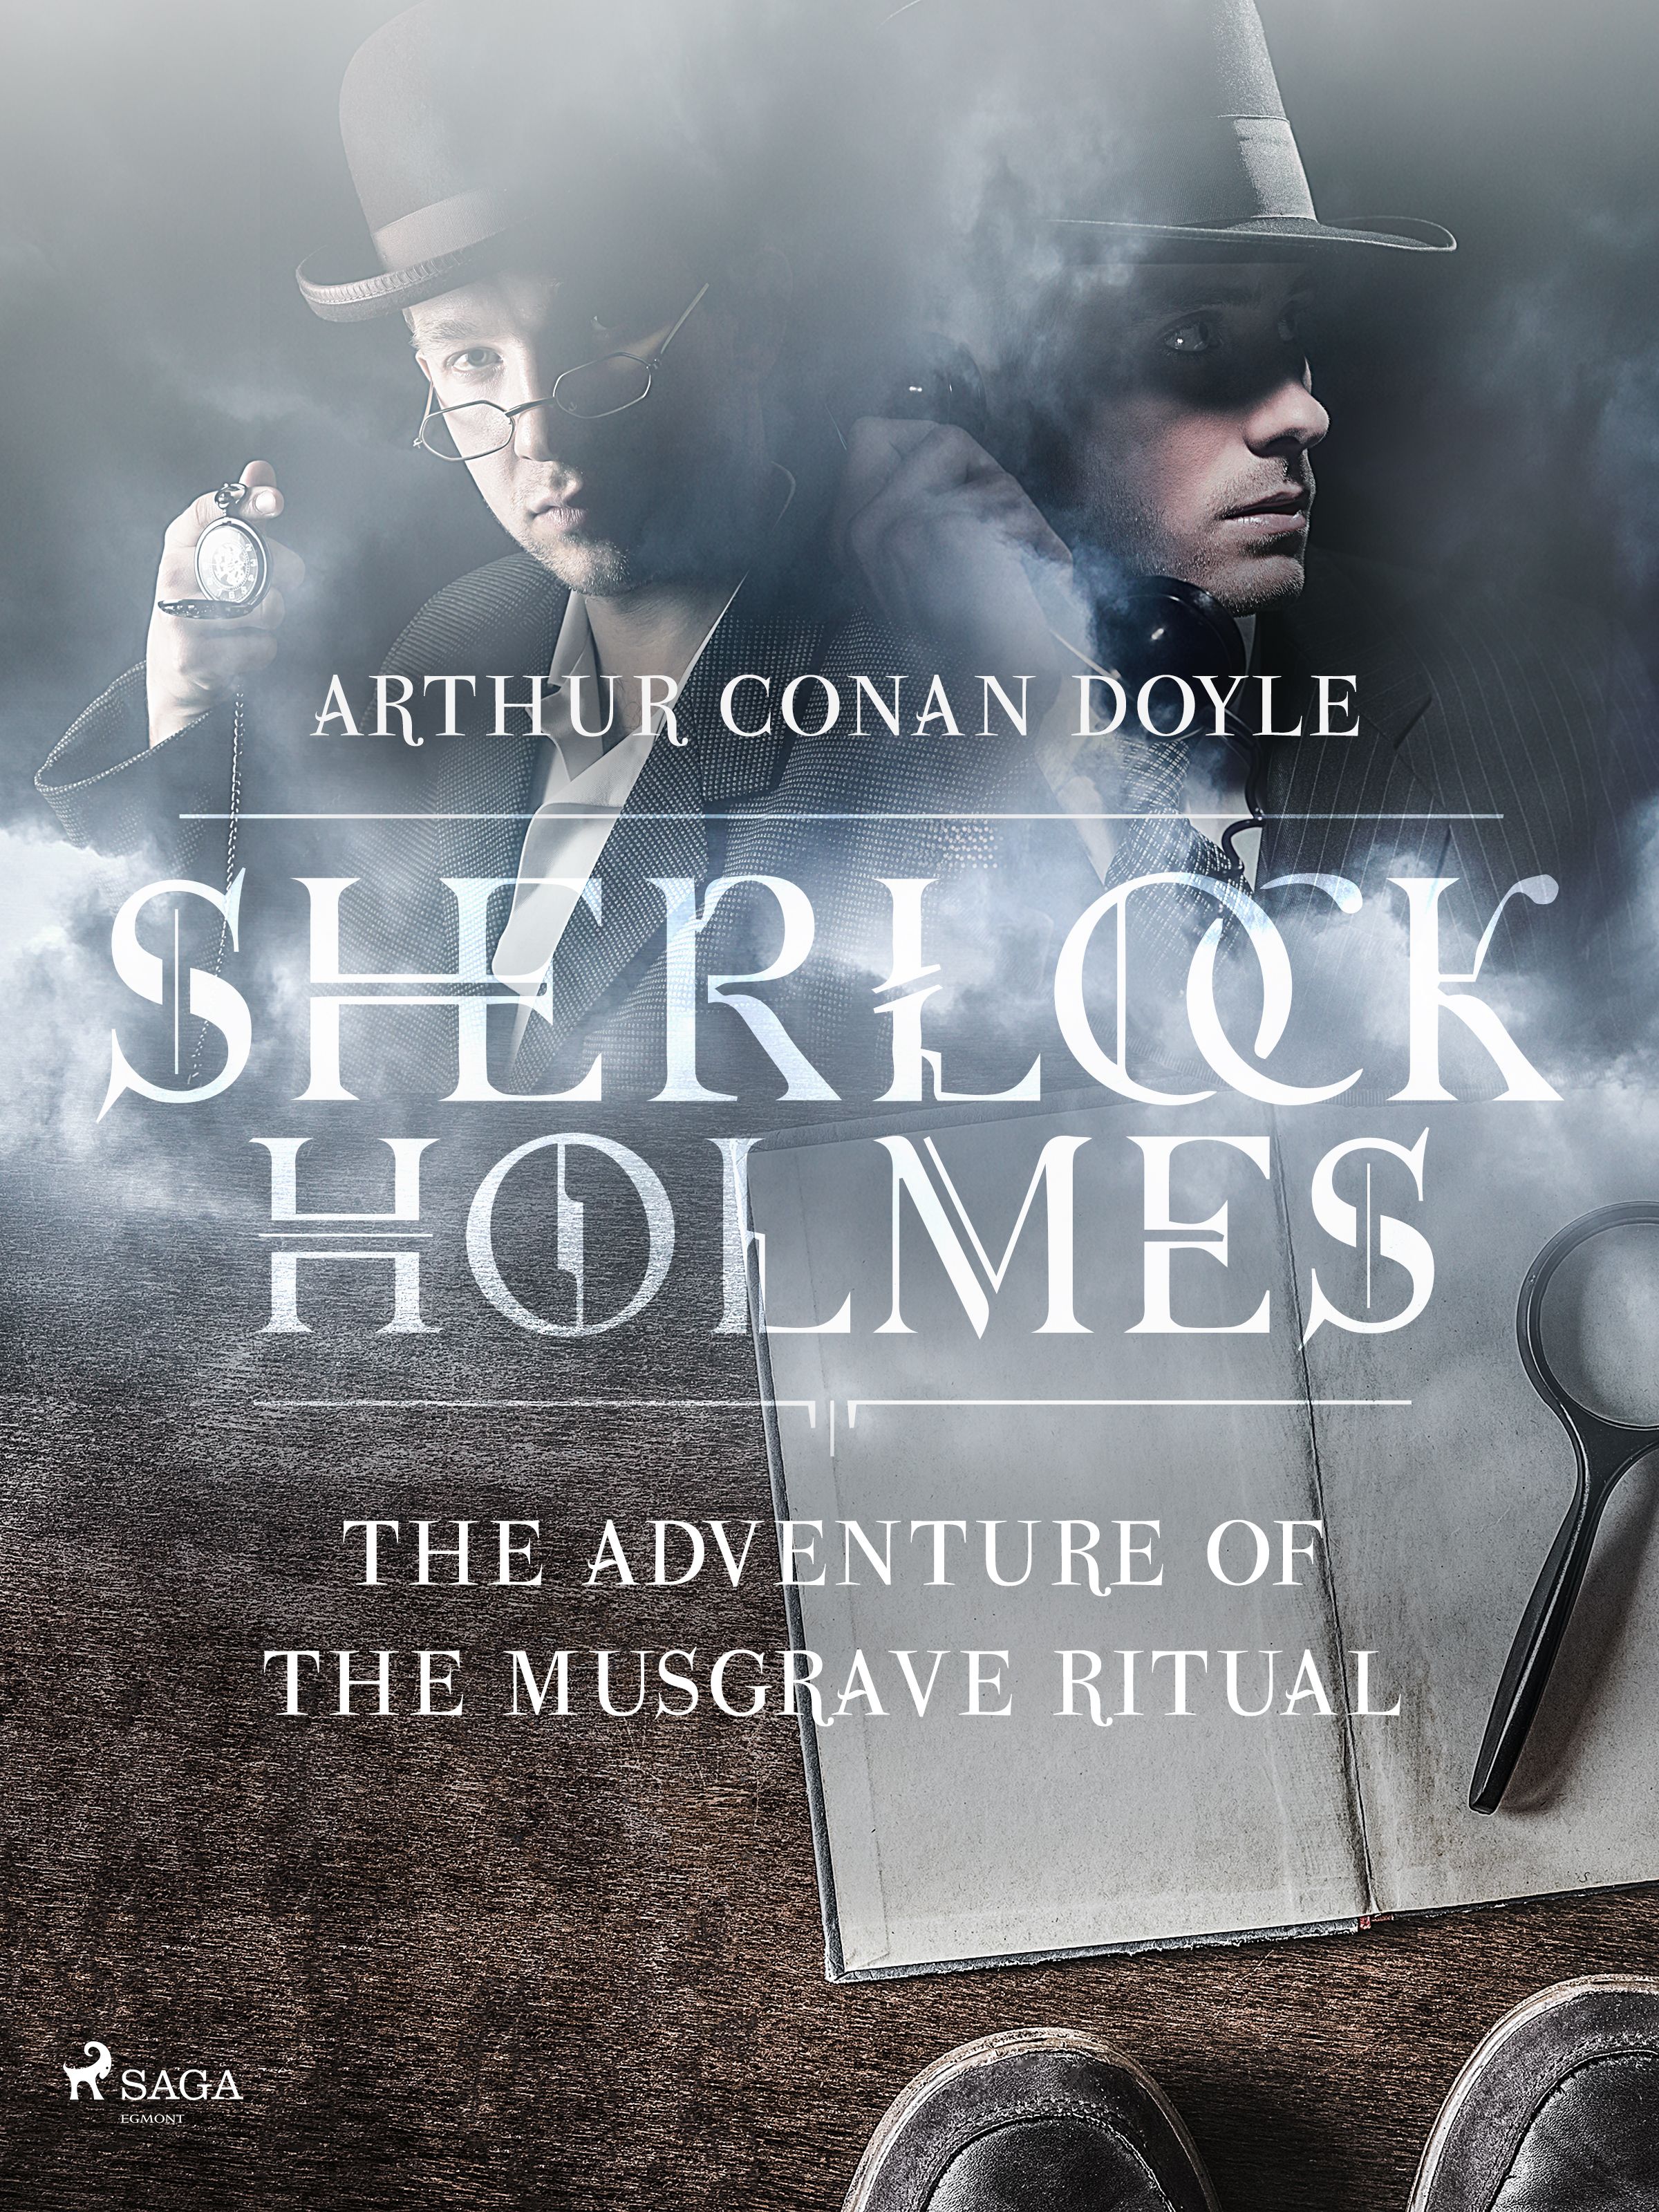 The Adventure of the Musgrave Ritual, e-bog af Arthur Conan Doyle